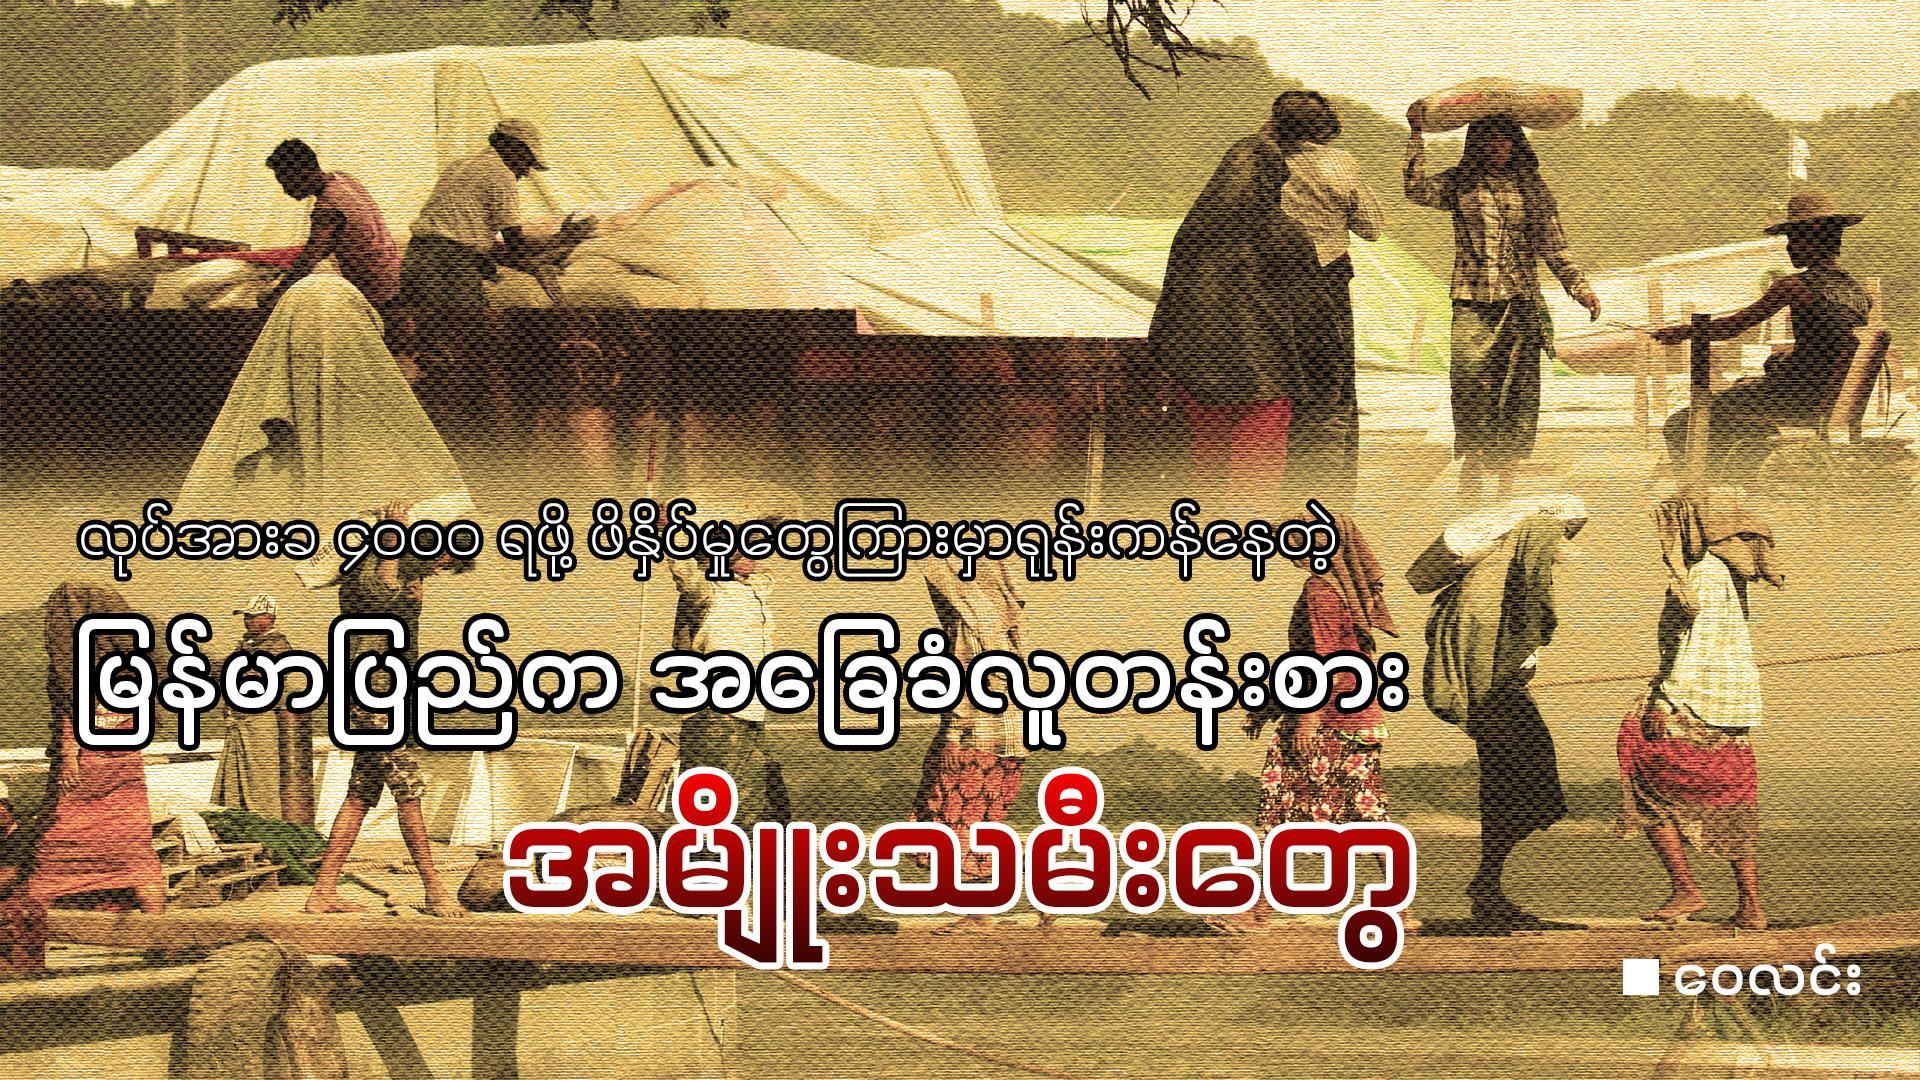 လုပ်အားခ ၄၀၀၀ ရဖို့ ဖိနှိပ်မှုတွေကြားမှာရုန်းကန်နေတဲ့ မြန်မာပြည်က အခြေခံလူတန်းစား အမျိုးသမီးတွေ (ဆောင်းပါး)